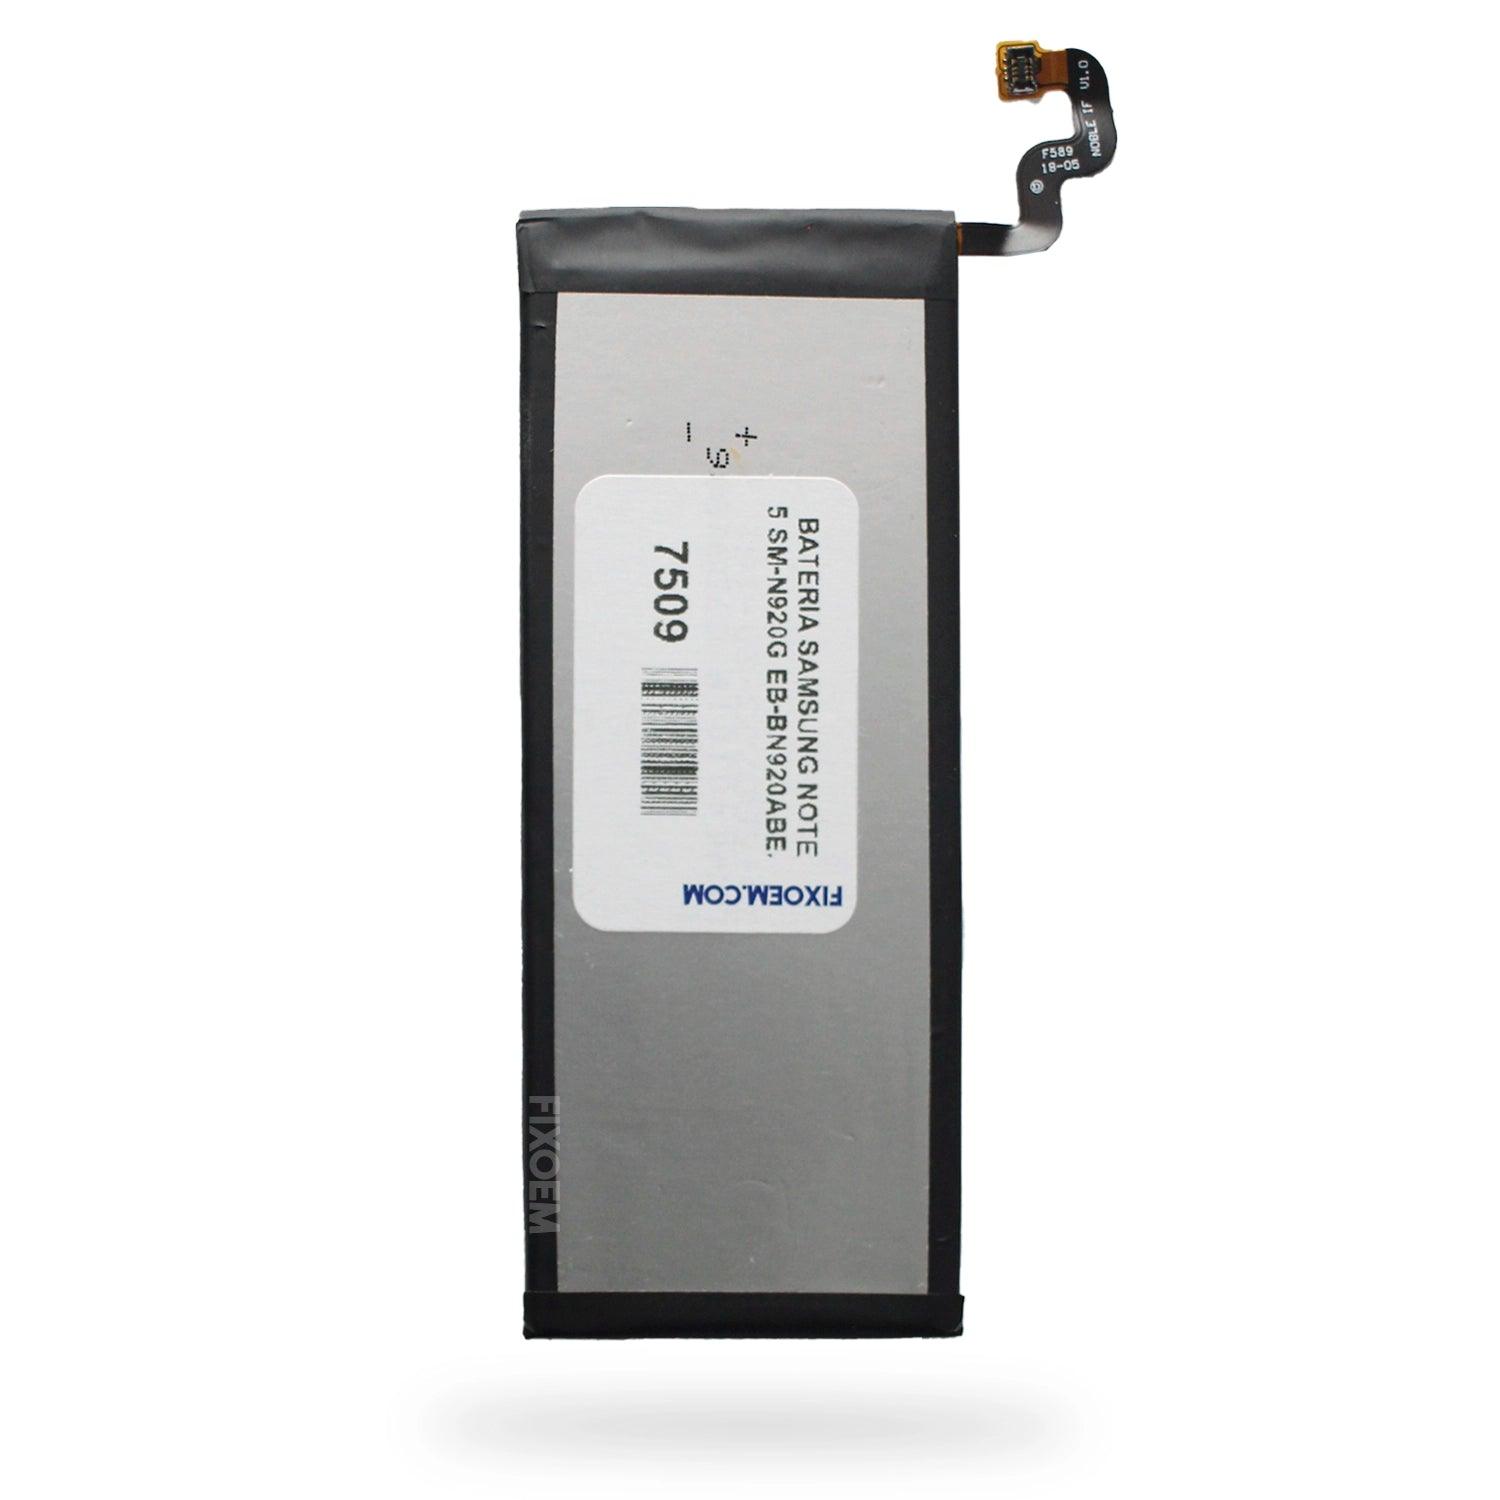 Bateria Samsung Note 5 Sm-N920G Eb-Bn920Abe. a solo $ 120.00 Refaccion y puestos celulares, refurbish y microelectronica.- FixOEM